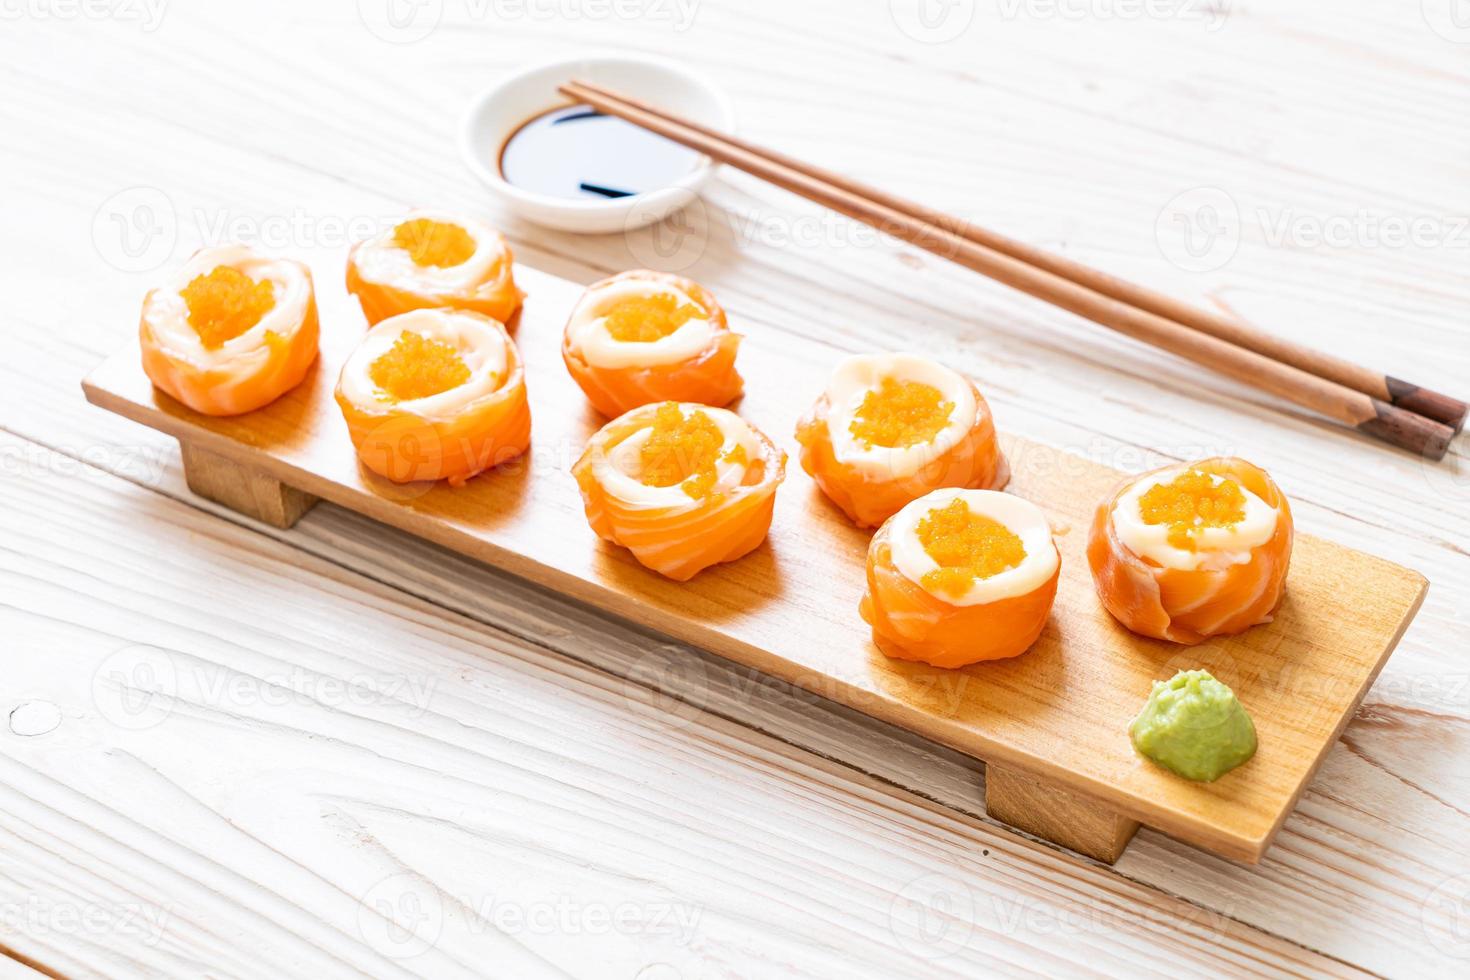 Rollo de sushi de salmón fresco con mayonesa y huevo de camarón - estilo de comida japonesa foto